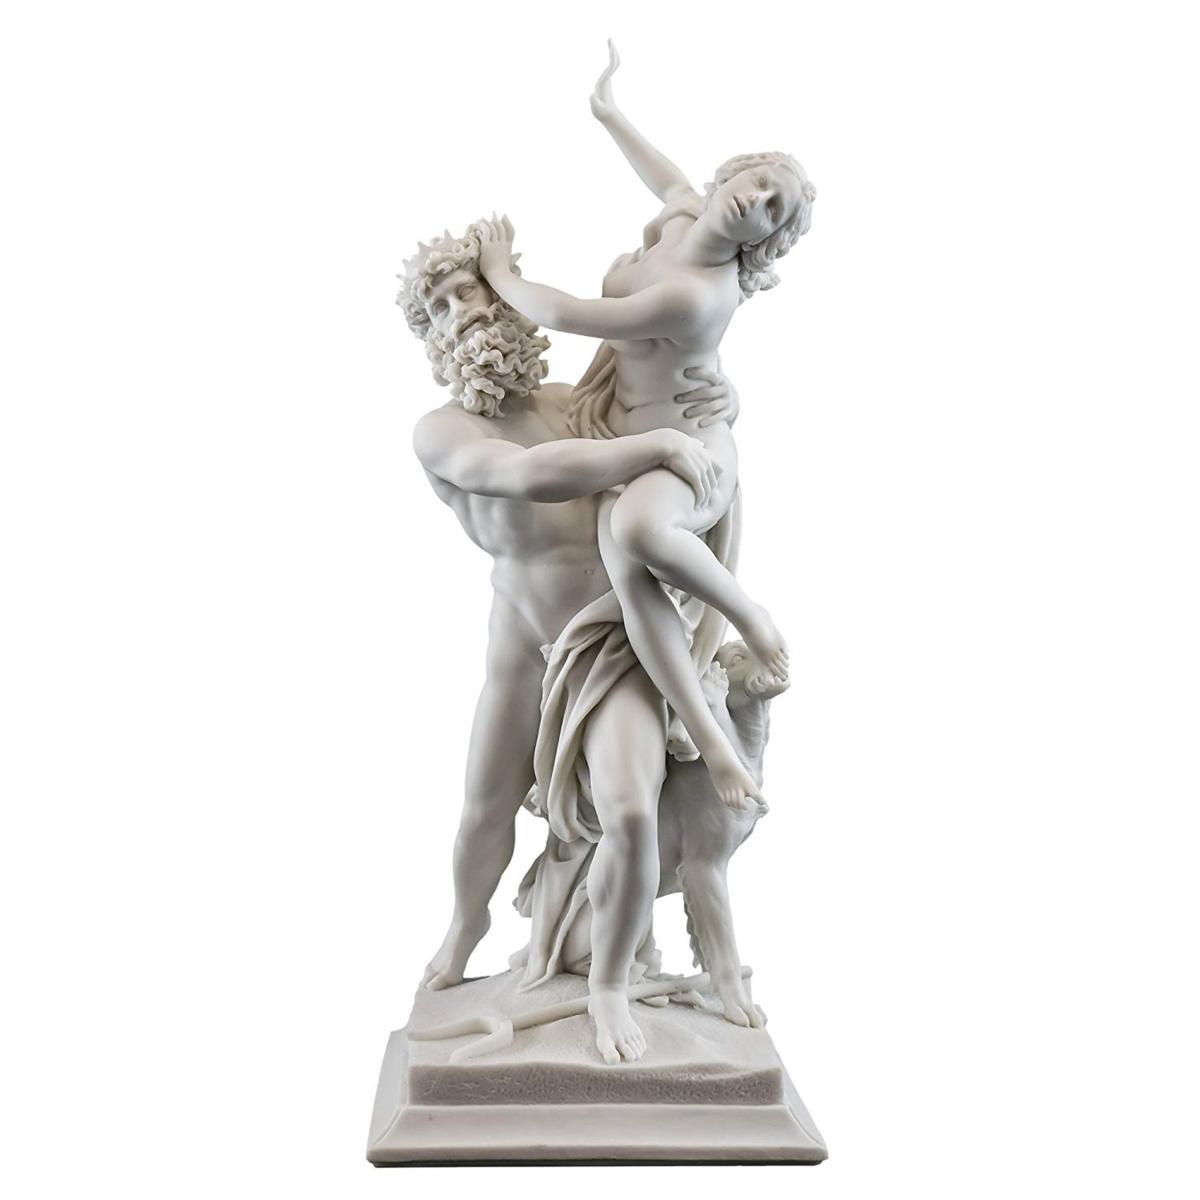 「プロセルピナの略奪」 ペルセポネーをさらおうとするプルート ロレンツォ・ベルニーニ作 彫像 ボルゲーゼ美術館（輸入品